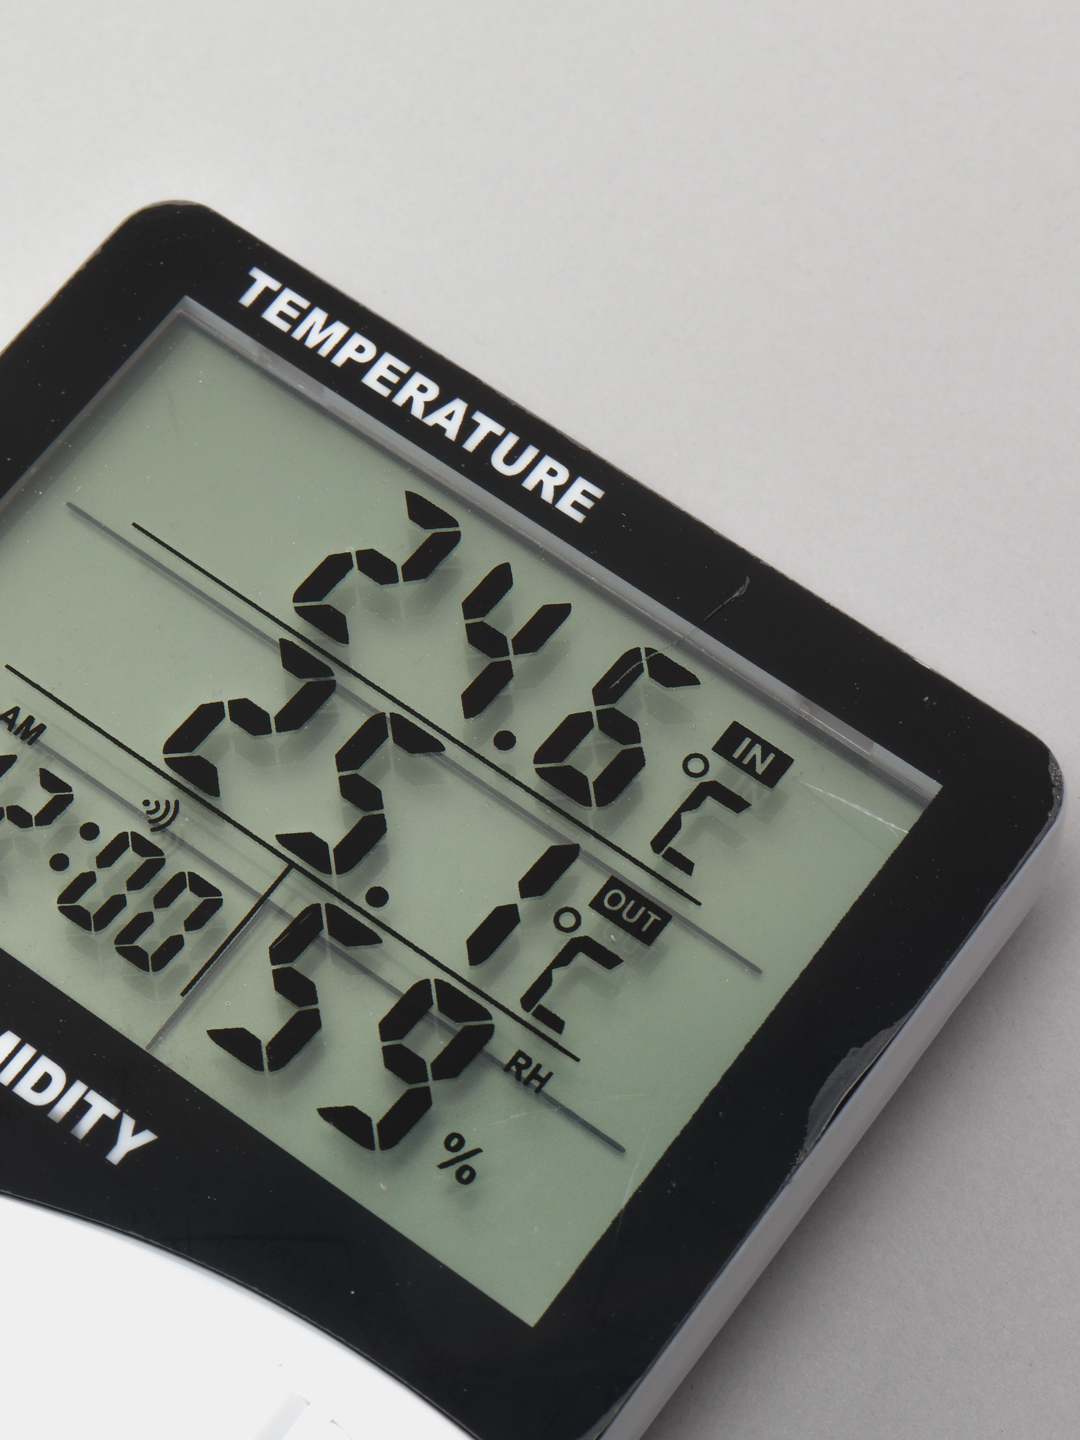  термометр метеостанция с часами и будильником  по цене .